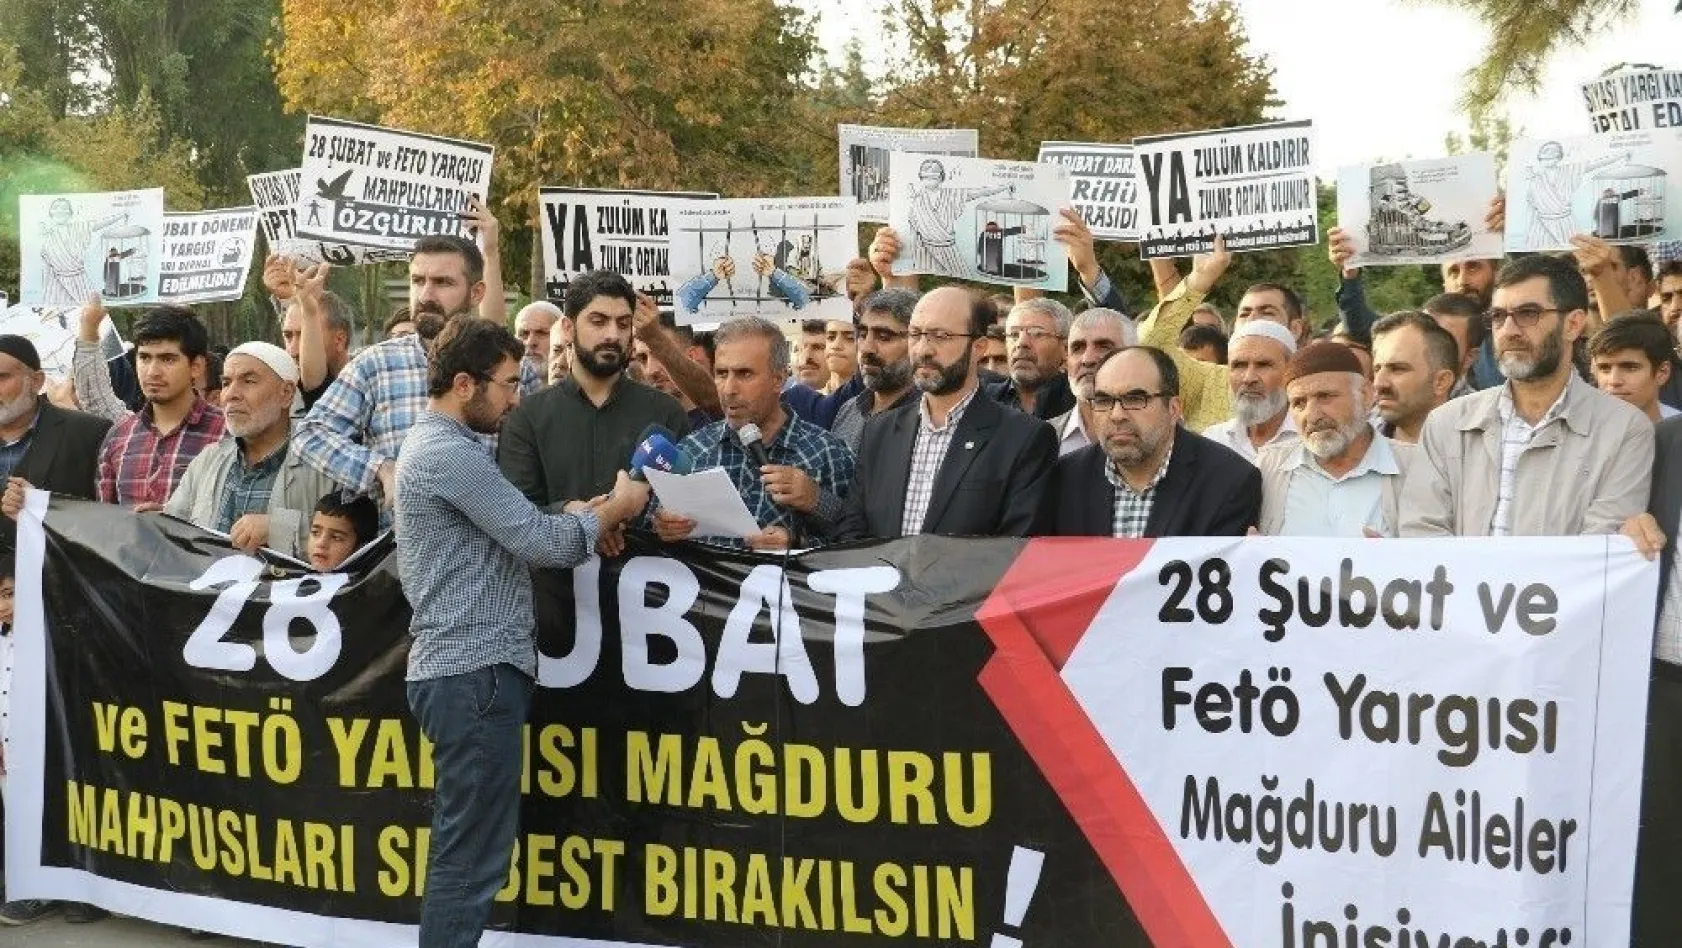 Diyarbakır'da 28 Şubat ve FETÖ mağdurlarına özgürlük talebi
